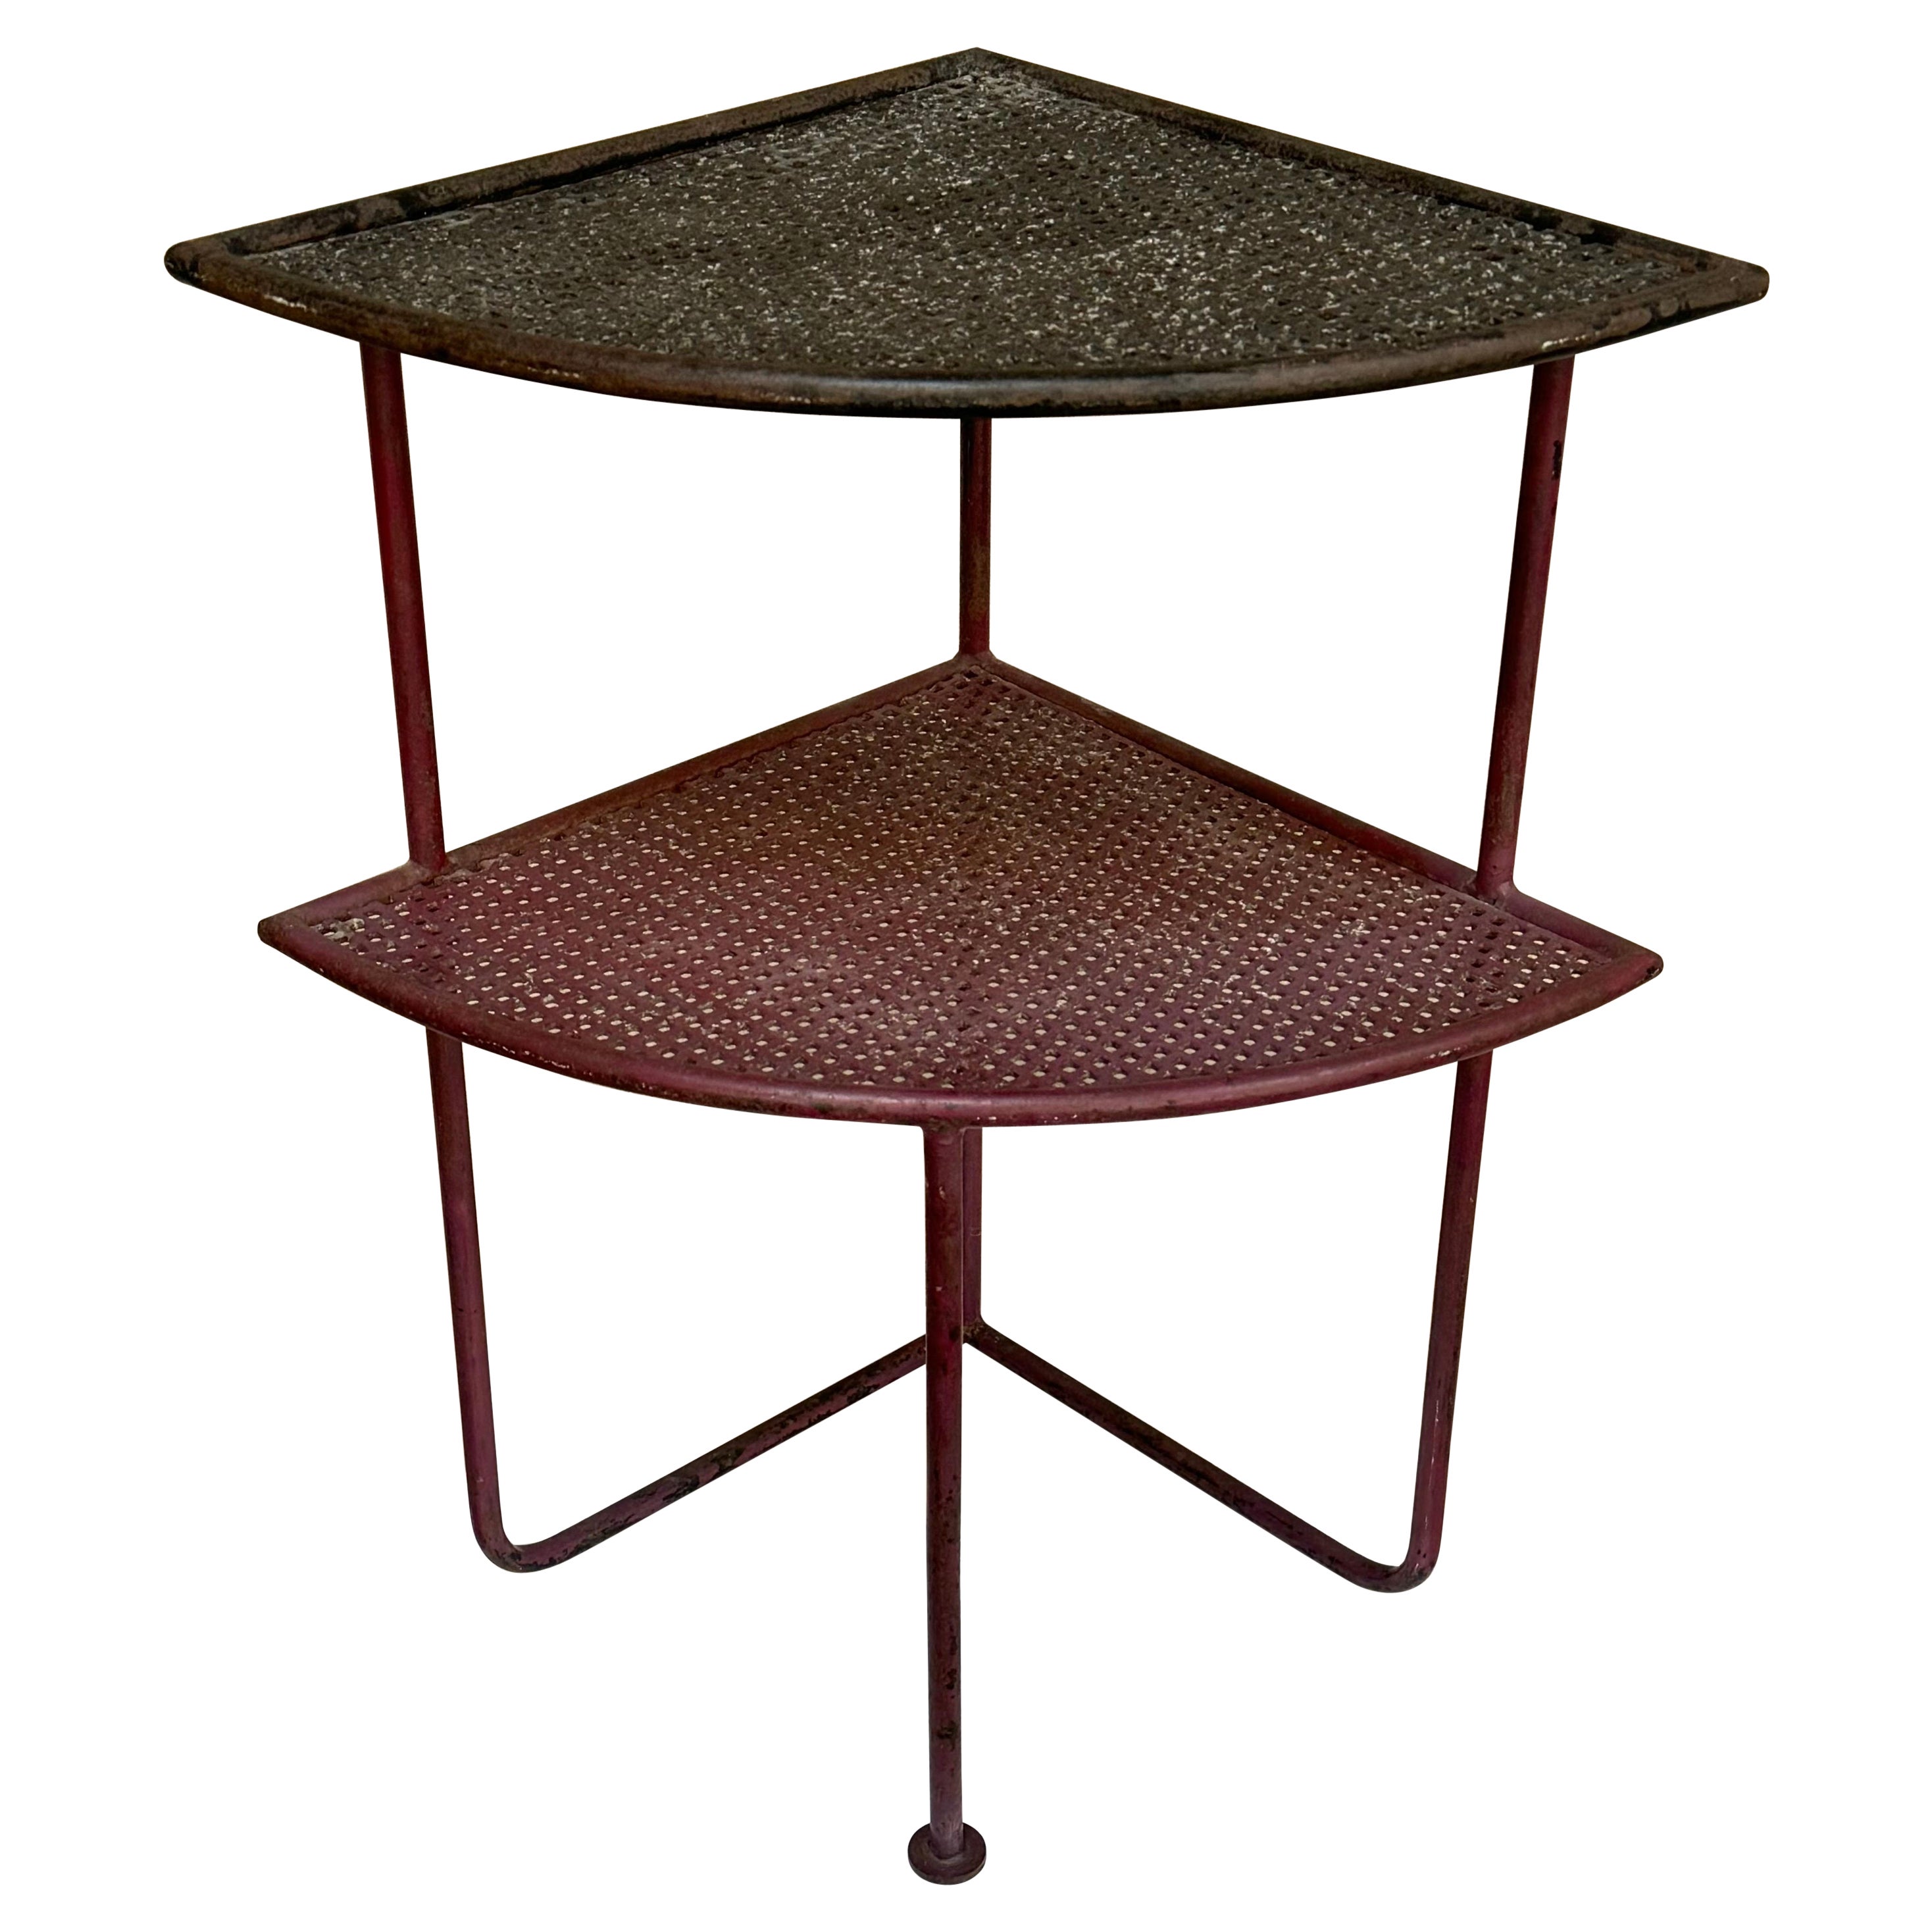 Table d'appoint en fer français moderniste des années 1950 avec étagères en métal perforé